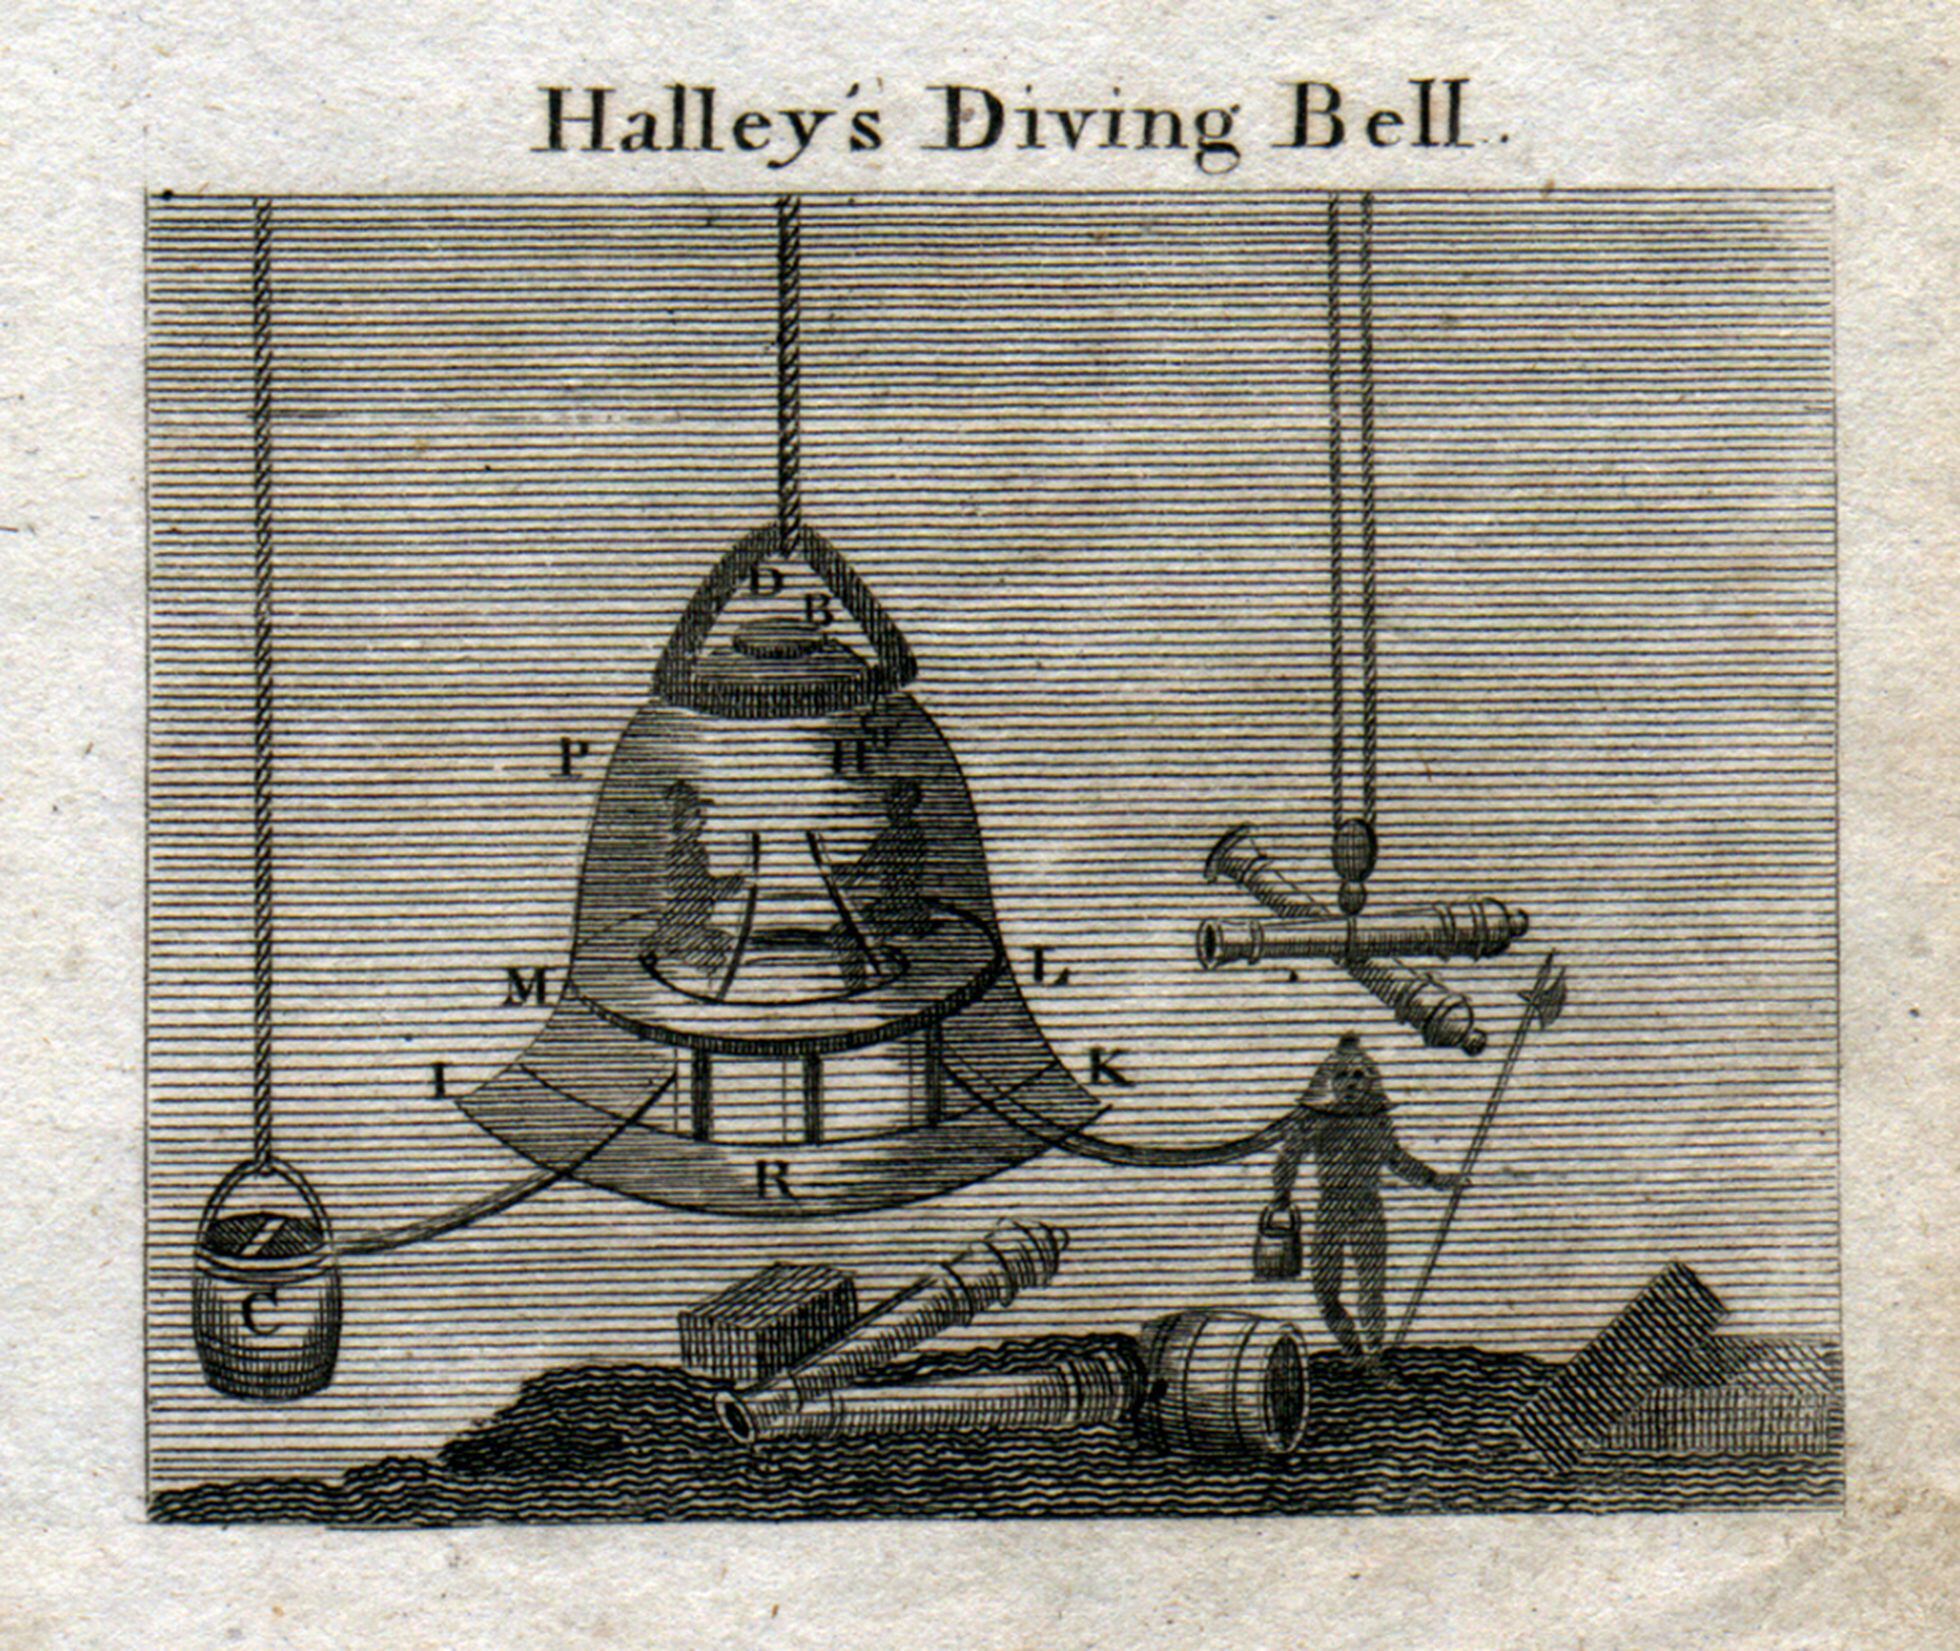 Водолазный колокол содержащий 6 моль. Эдмонд Галлей водолазный колокол. Водолазный колокол Леонардо да Винчи. Водолазный аппарат 1871 Лодыгин.